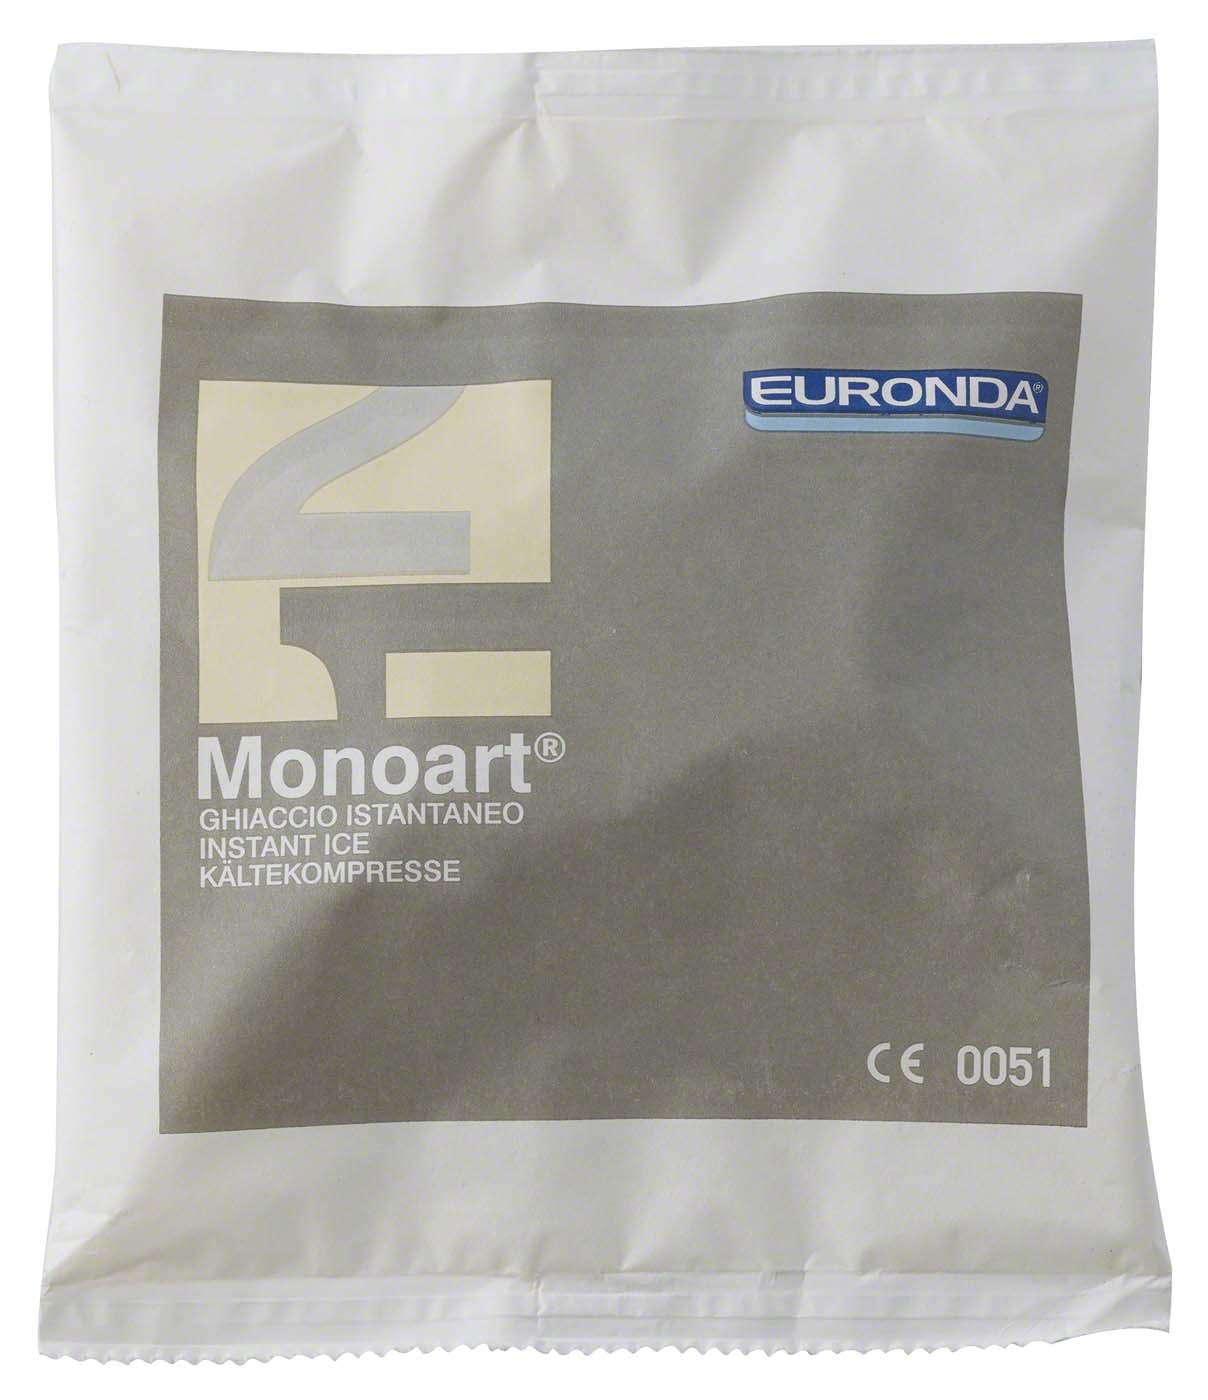 Monoart® Kältekompressen EURONDA